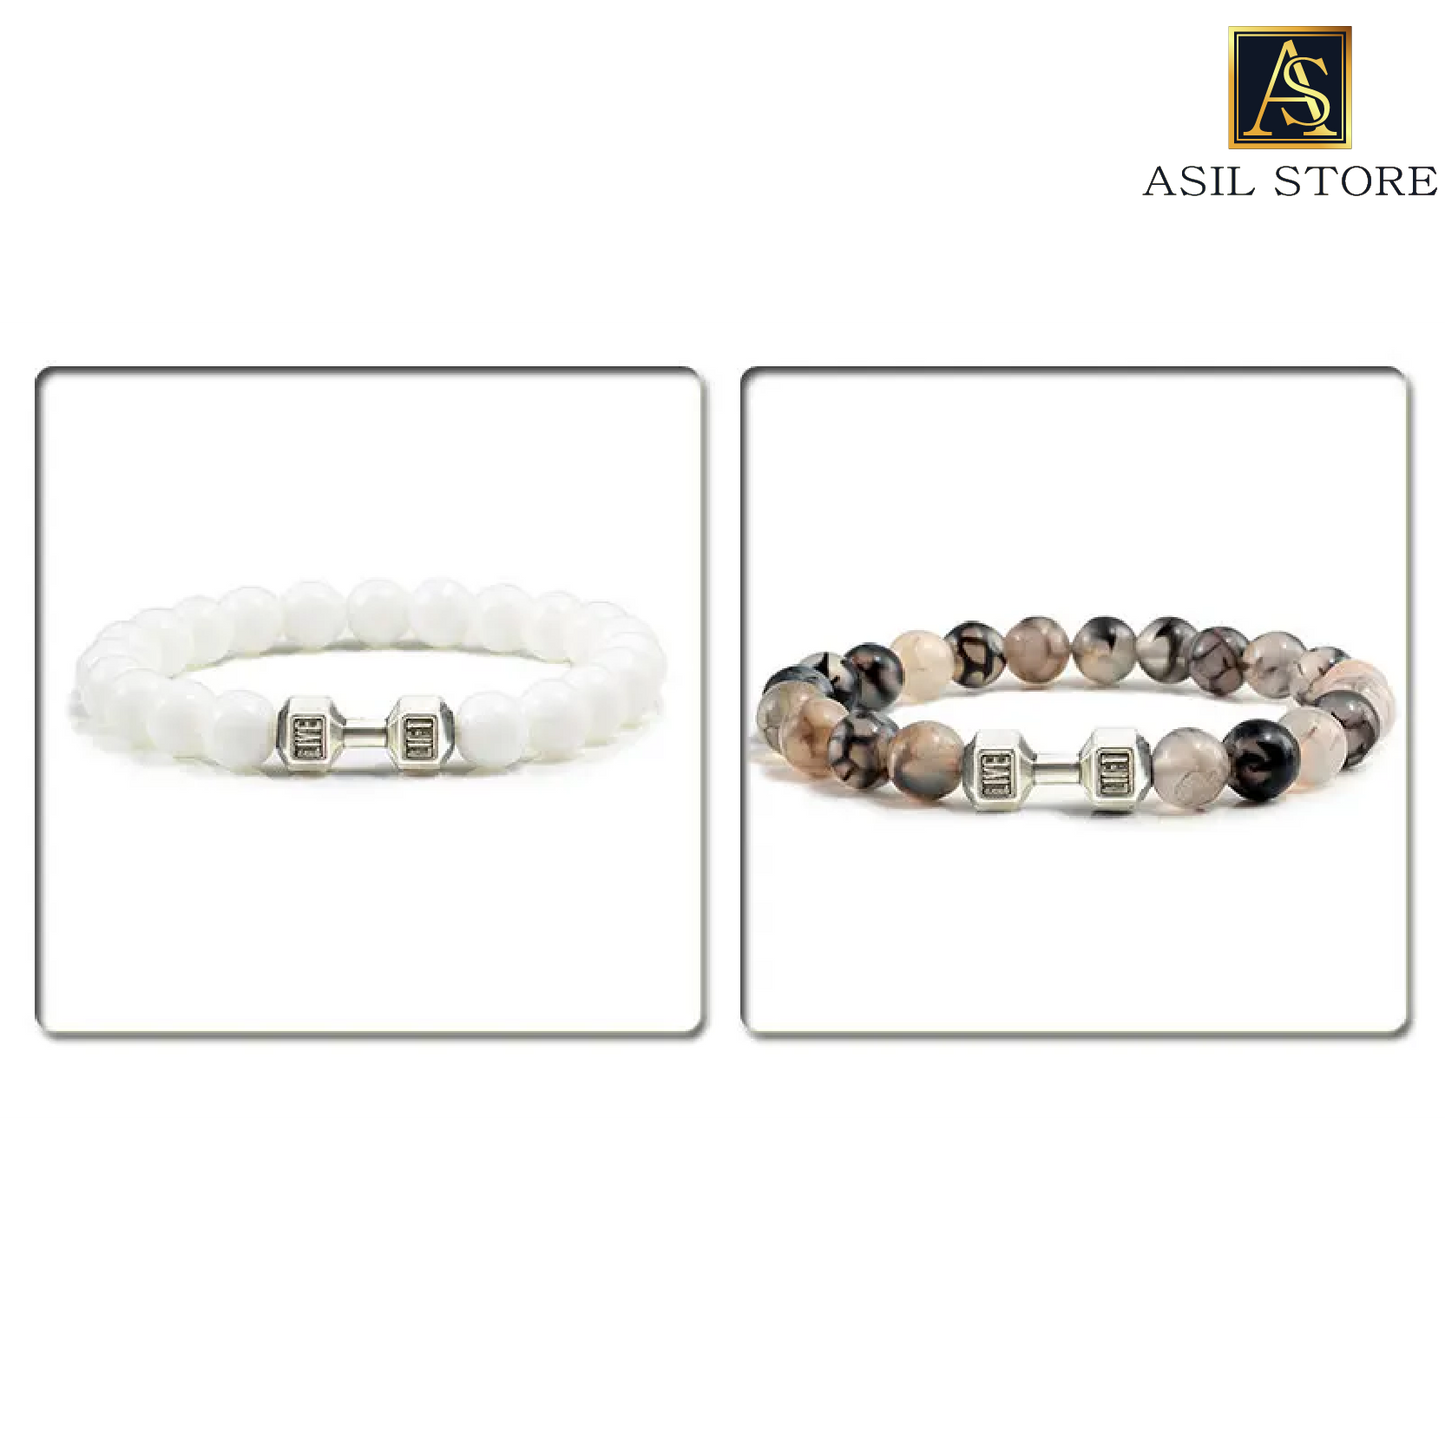 ASIL STORE : Men's natural volcanic stone bracelet in matte black / White Beads Charm Dumbbell Strand Bracelets Women
Model number : 305